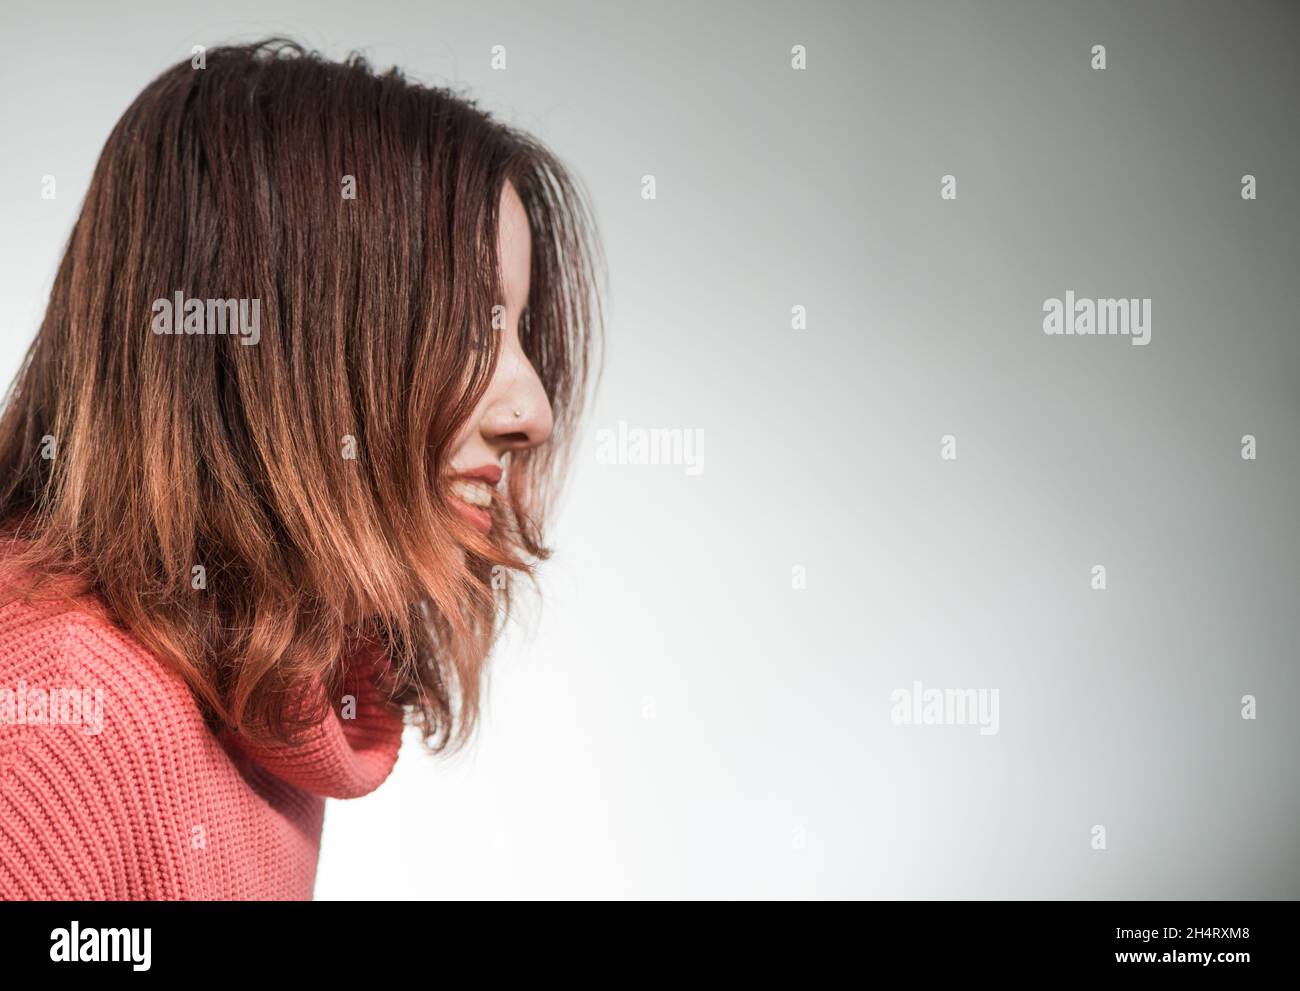 giovane donna timida ritratto in maglione rosa su sfondo studio Foto Stock